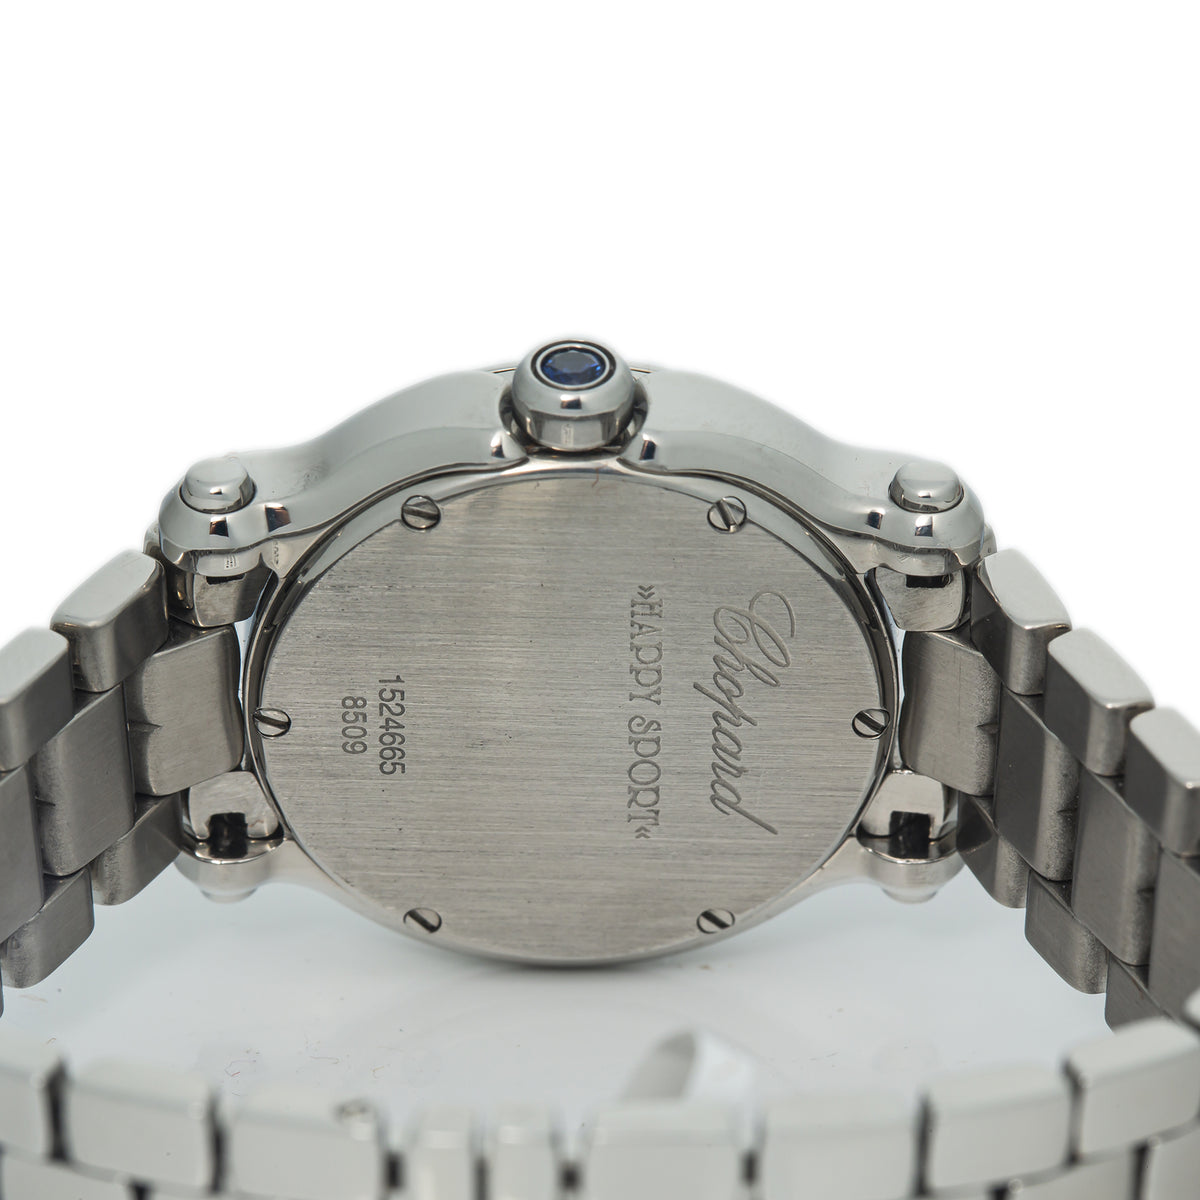 Chopard Happy Sport 8509 5 Floating Diamonds MOP dial Steel Quartz Watch 30mm